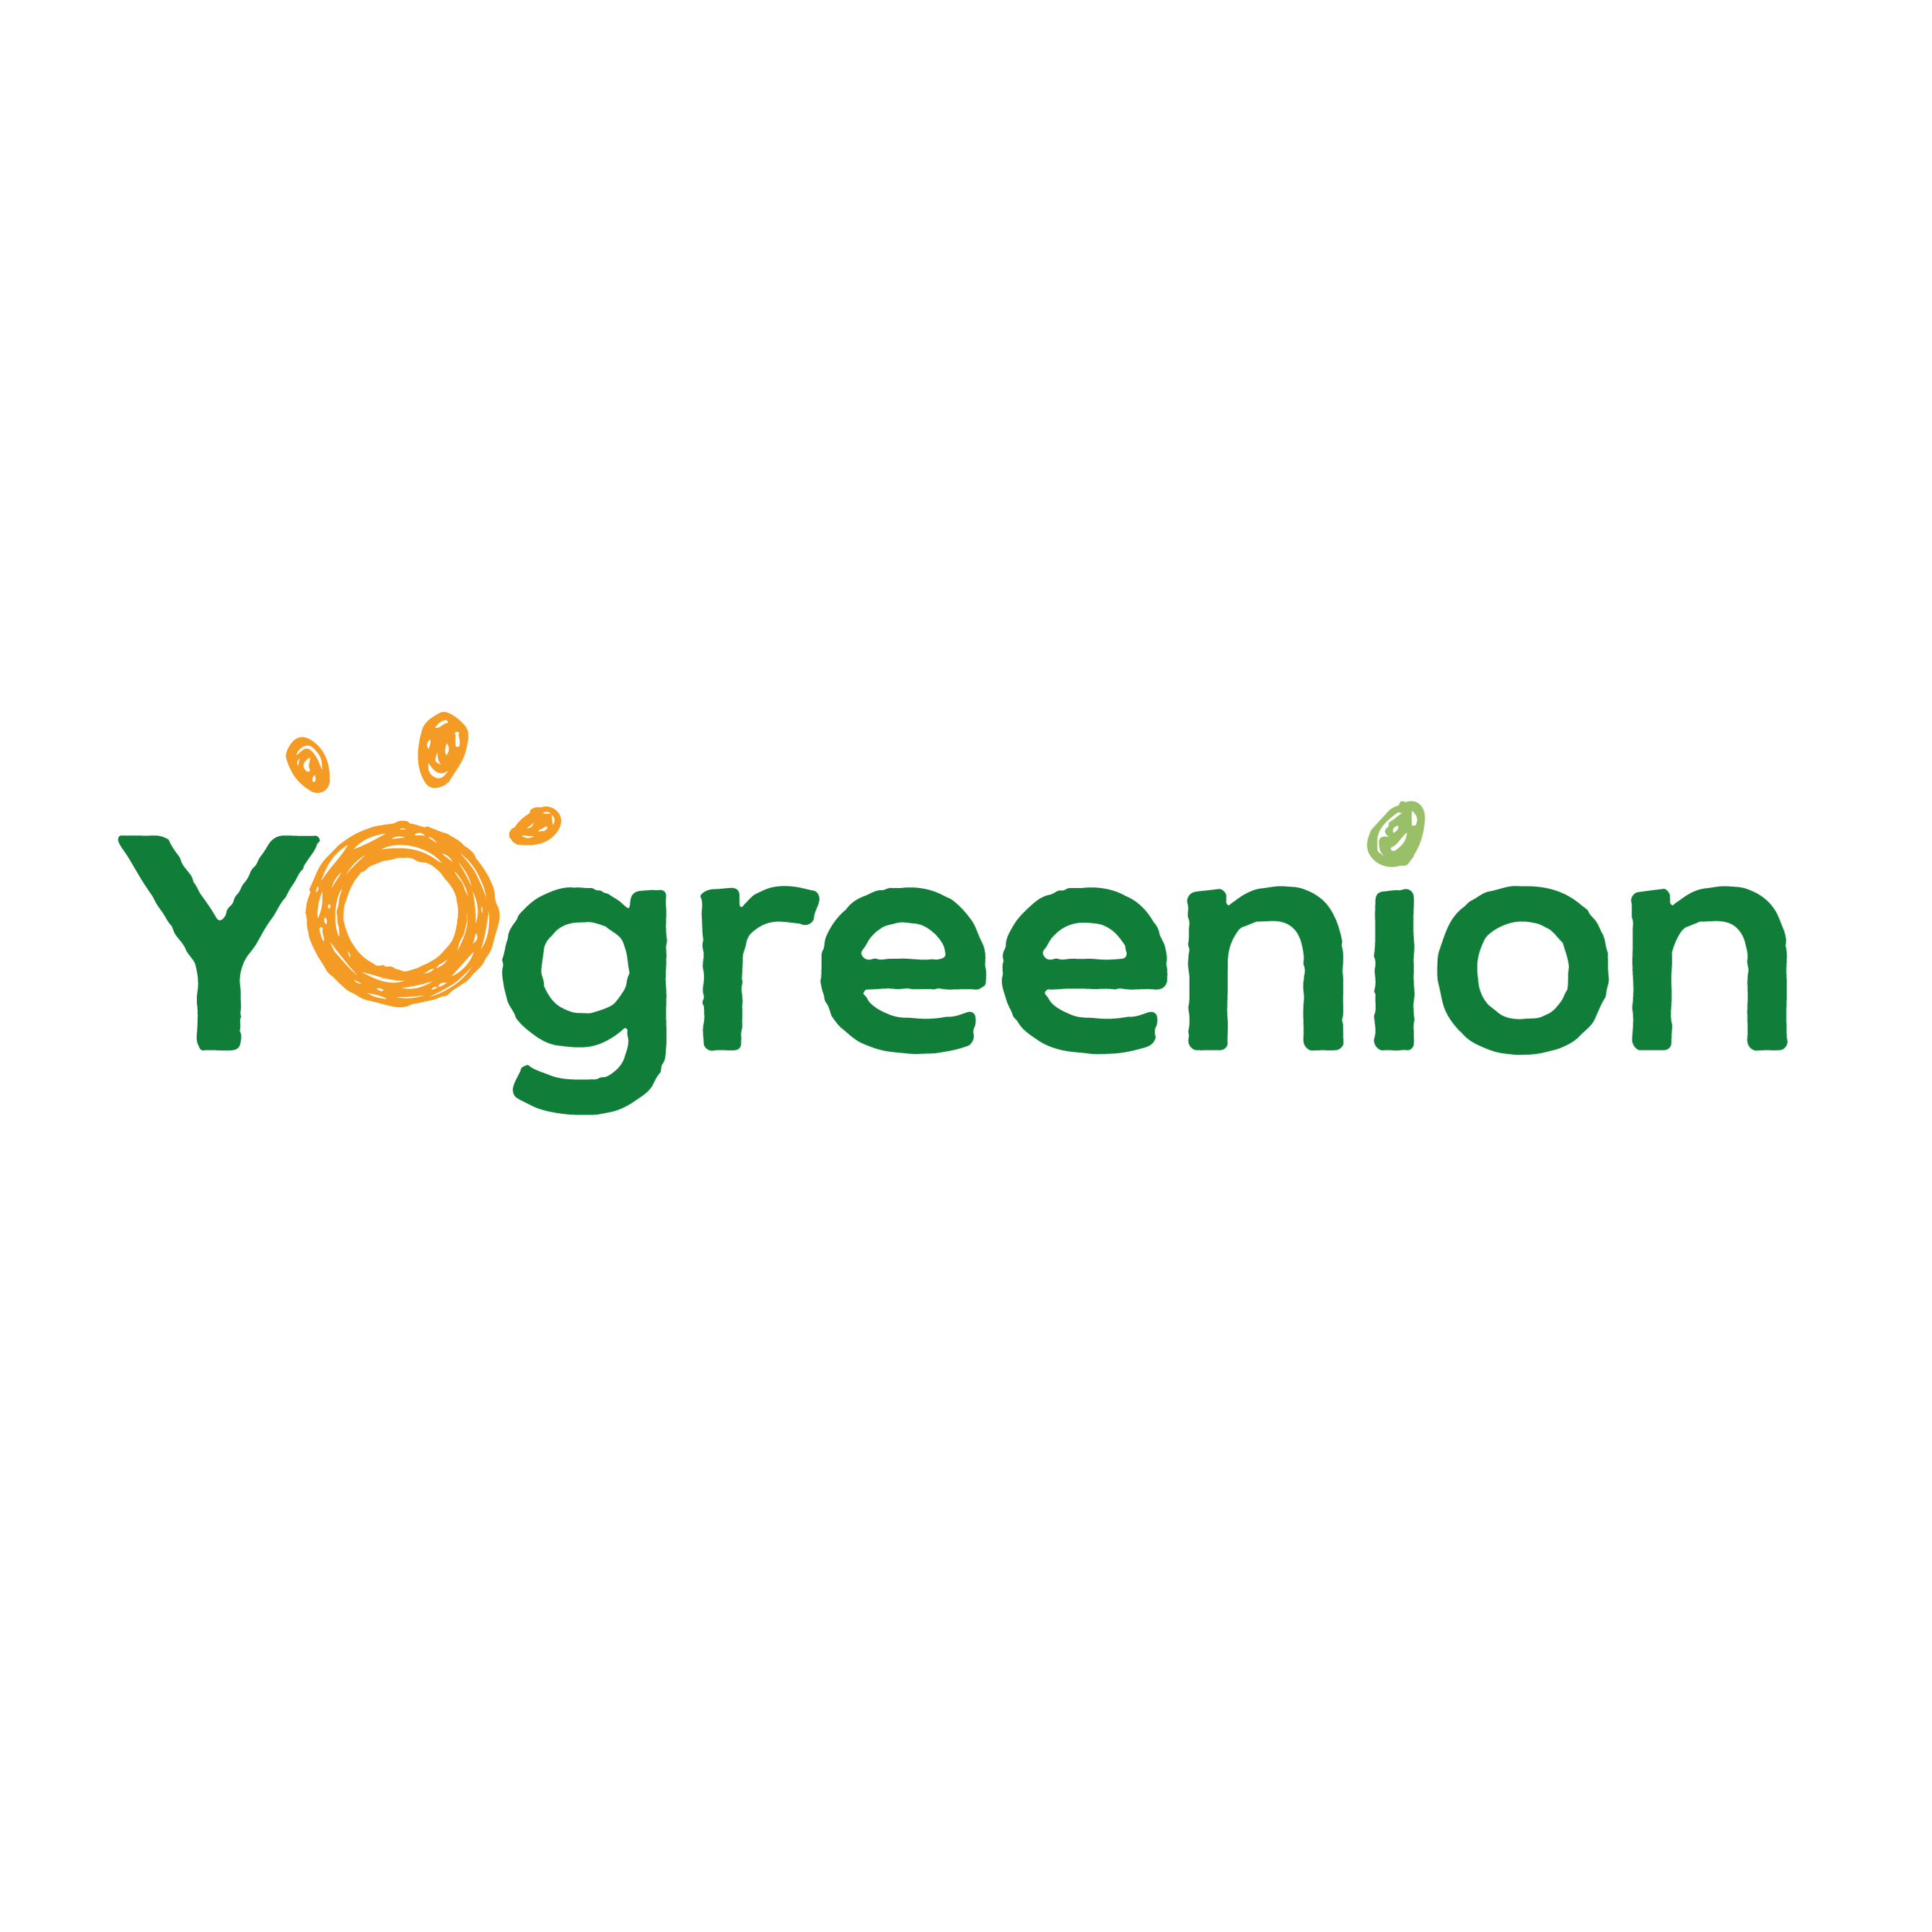 Yogreenion